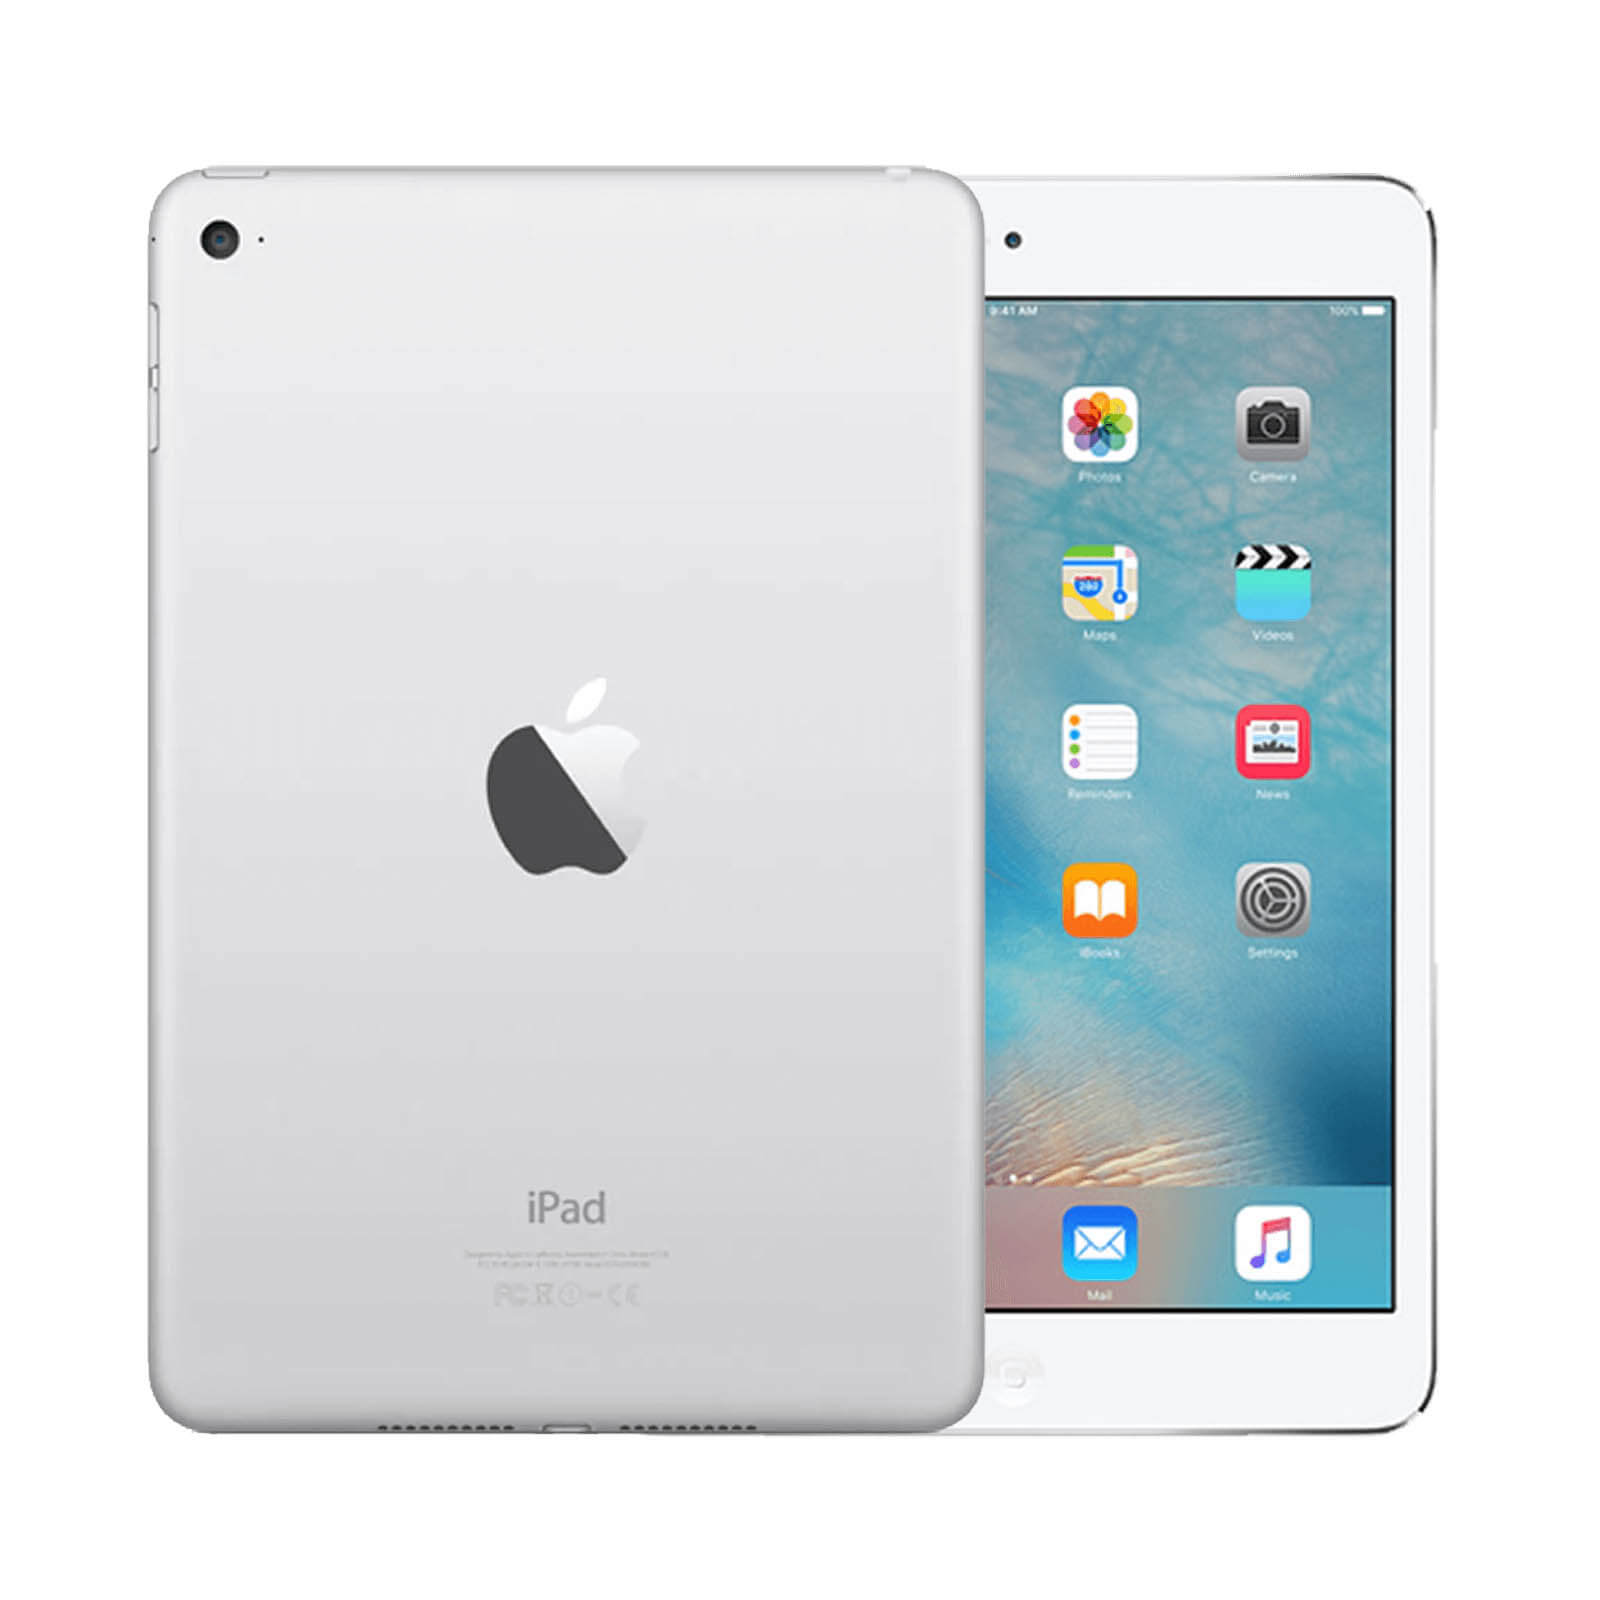 Apple iPad Mini 4 32GB Silver WiFi - Good 32GB Silver Good